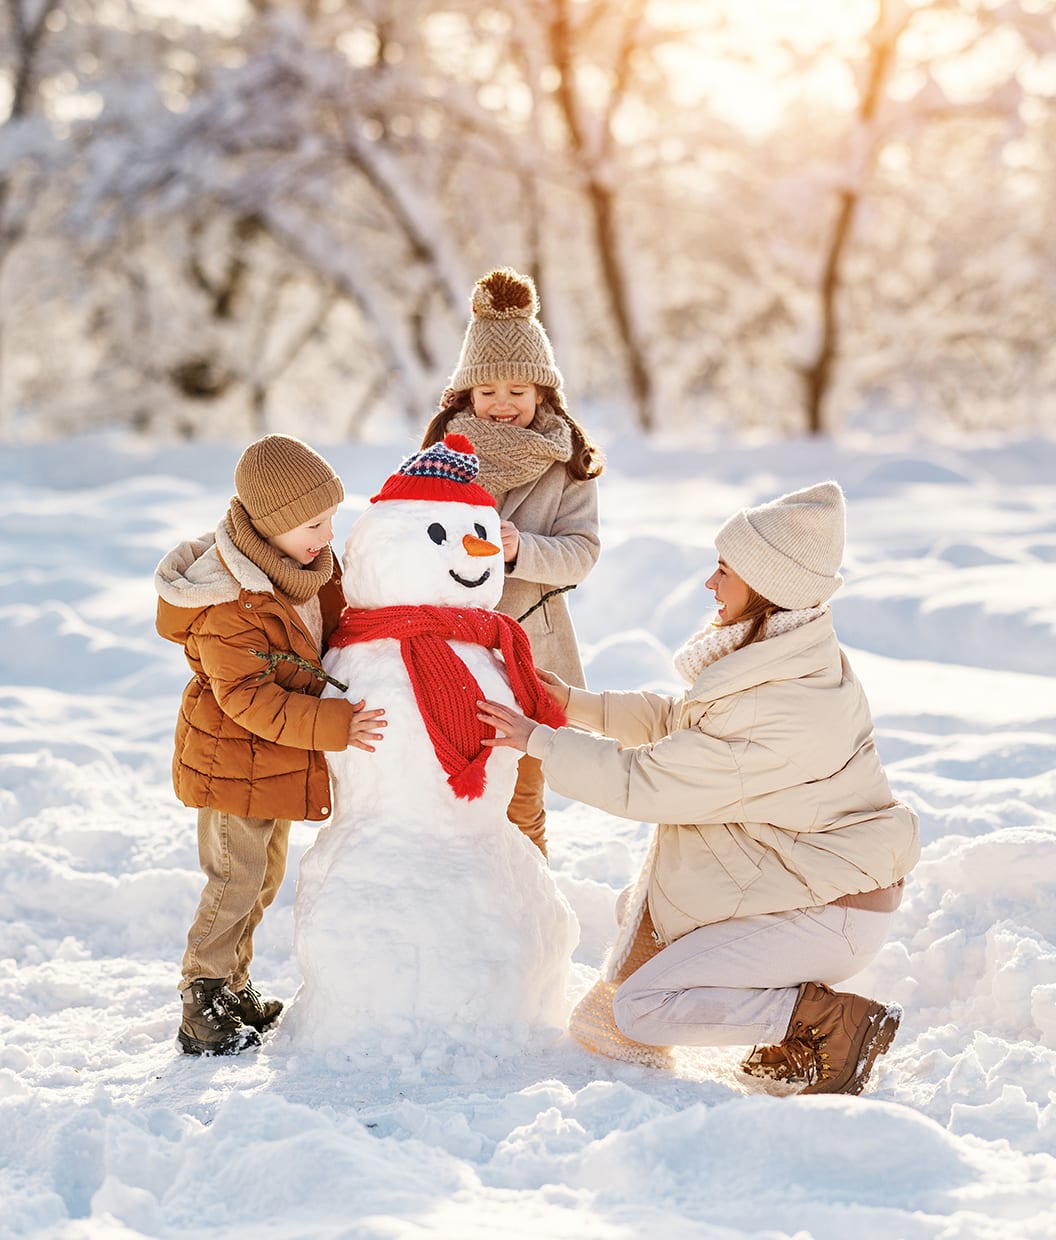 Bilde av en kvinne og to barn som bygger en snømann en solrik vinterdag.